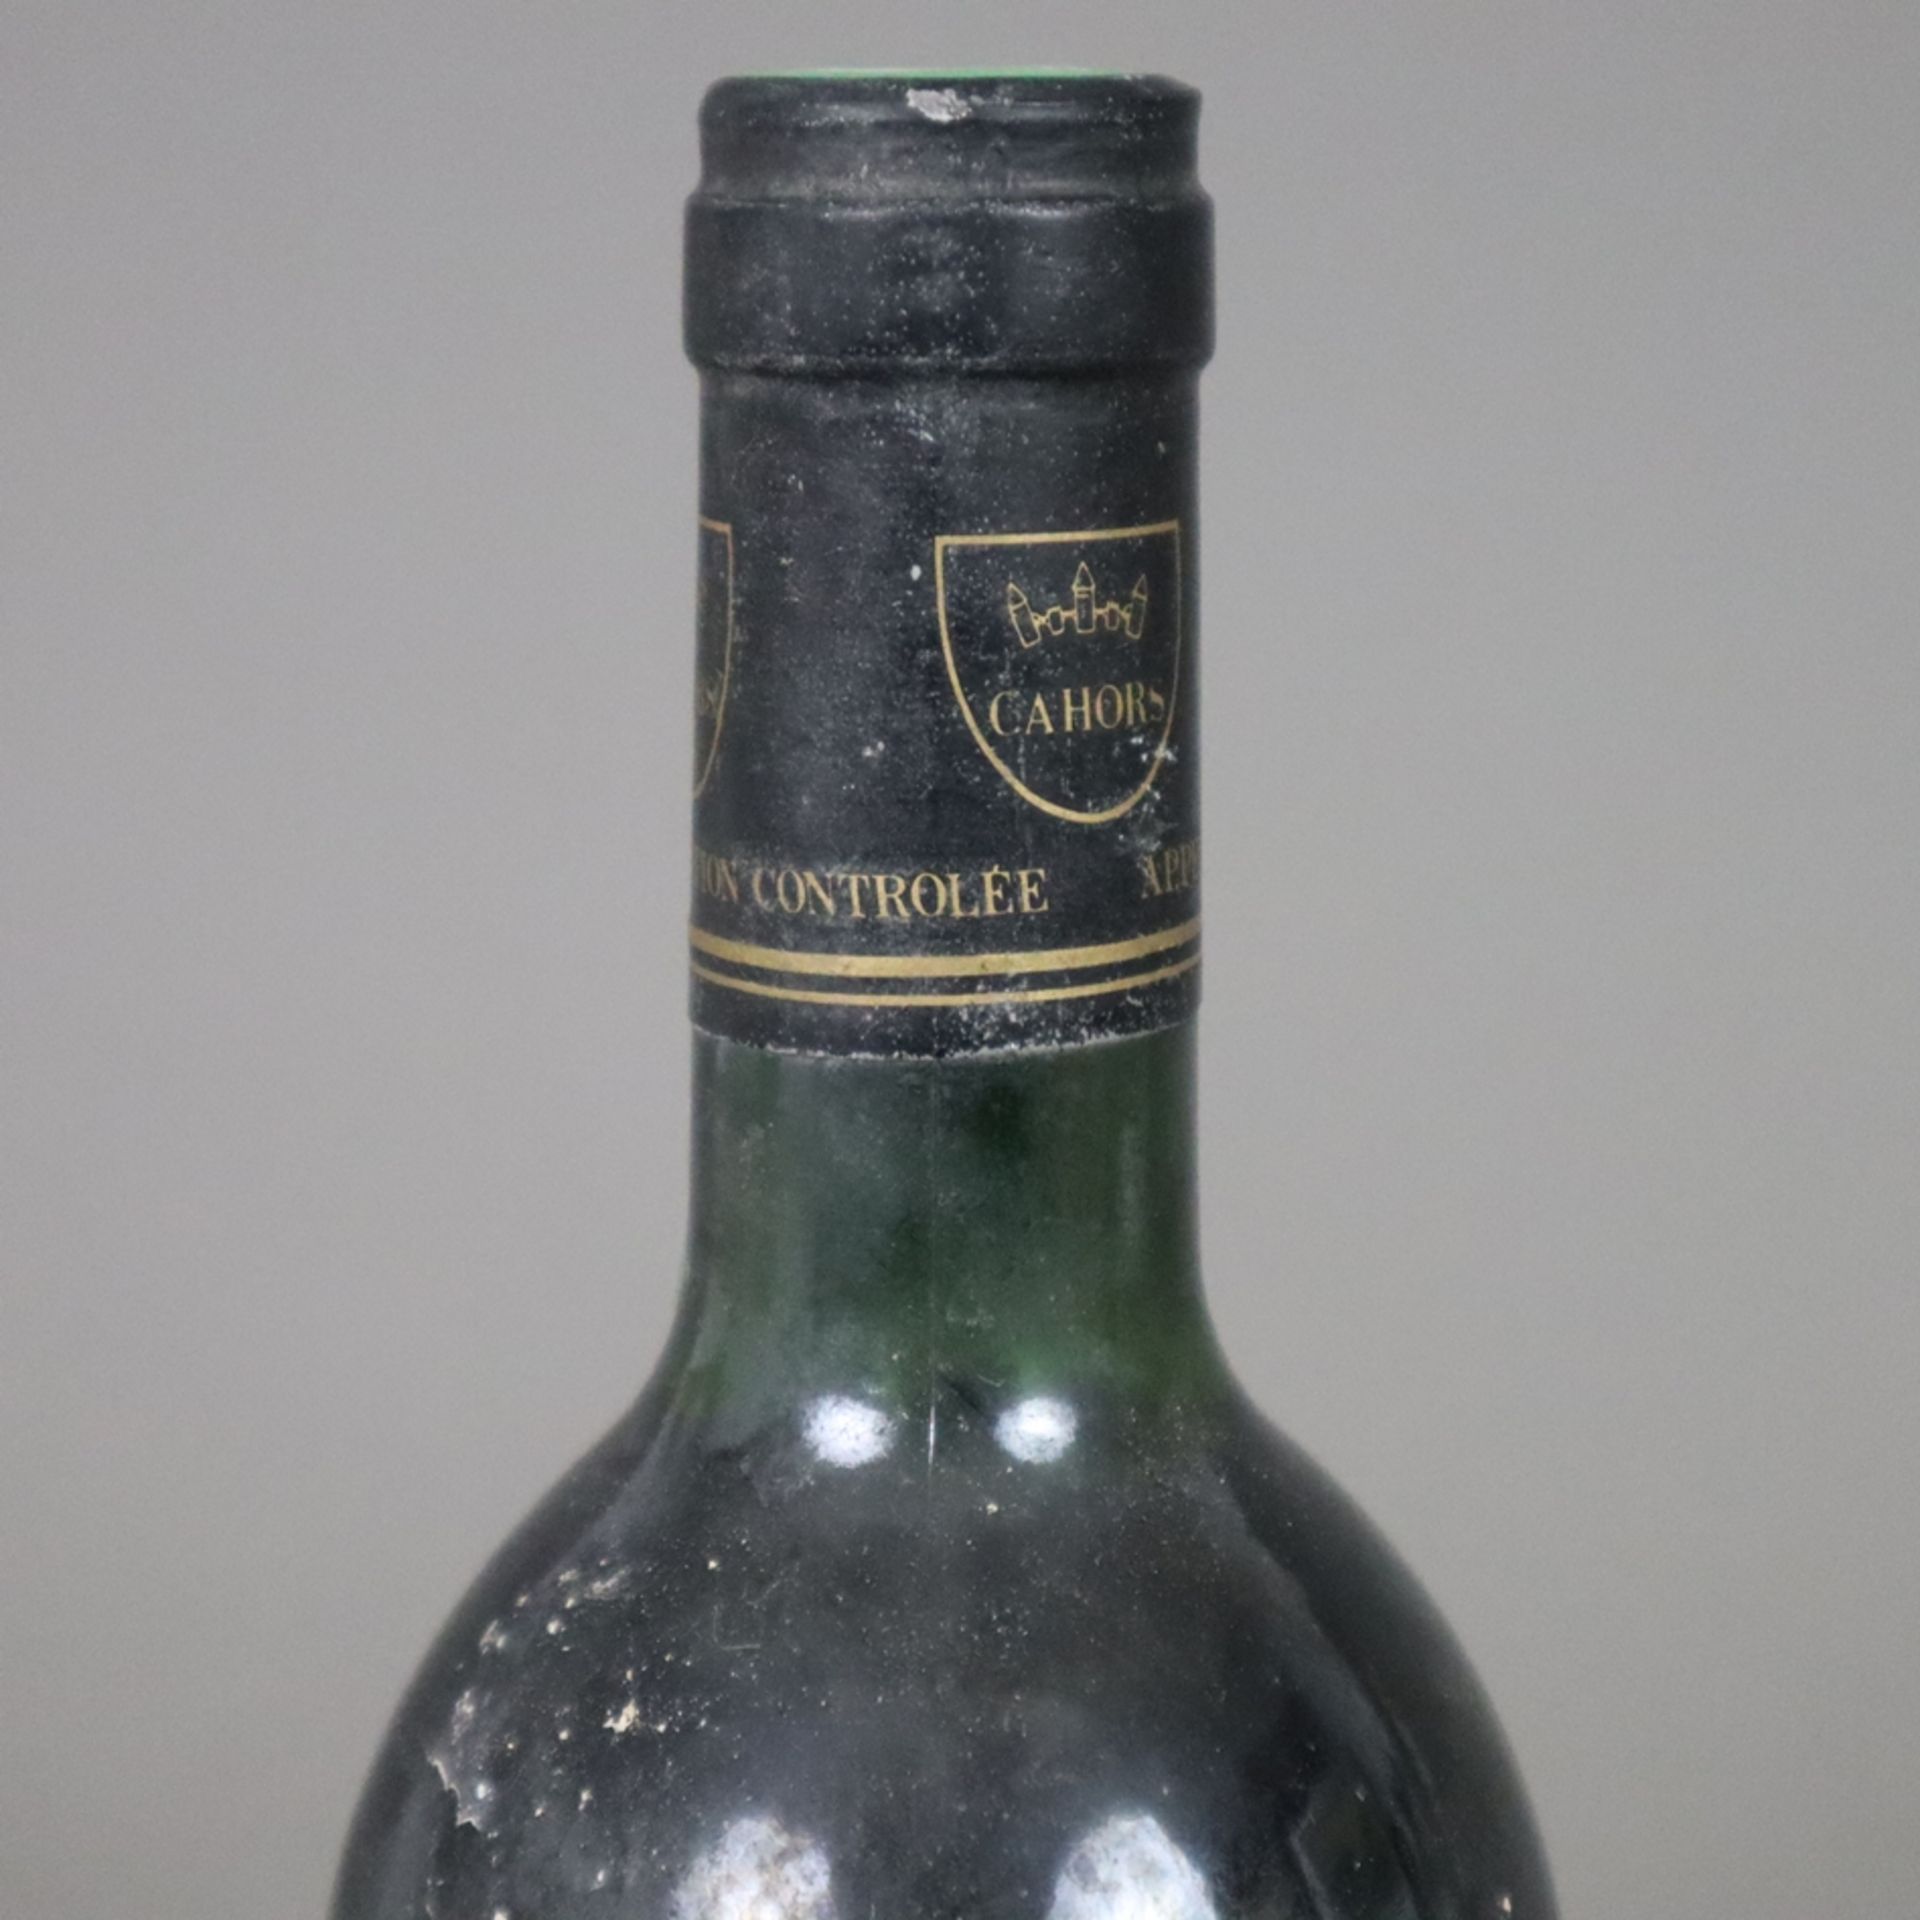 Wein - 1989 Château de Cénac, Cahors, France, 0,7 L, Flasche verschmutzt, Etikett stark beschädigt - Image 2 of 5